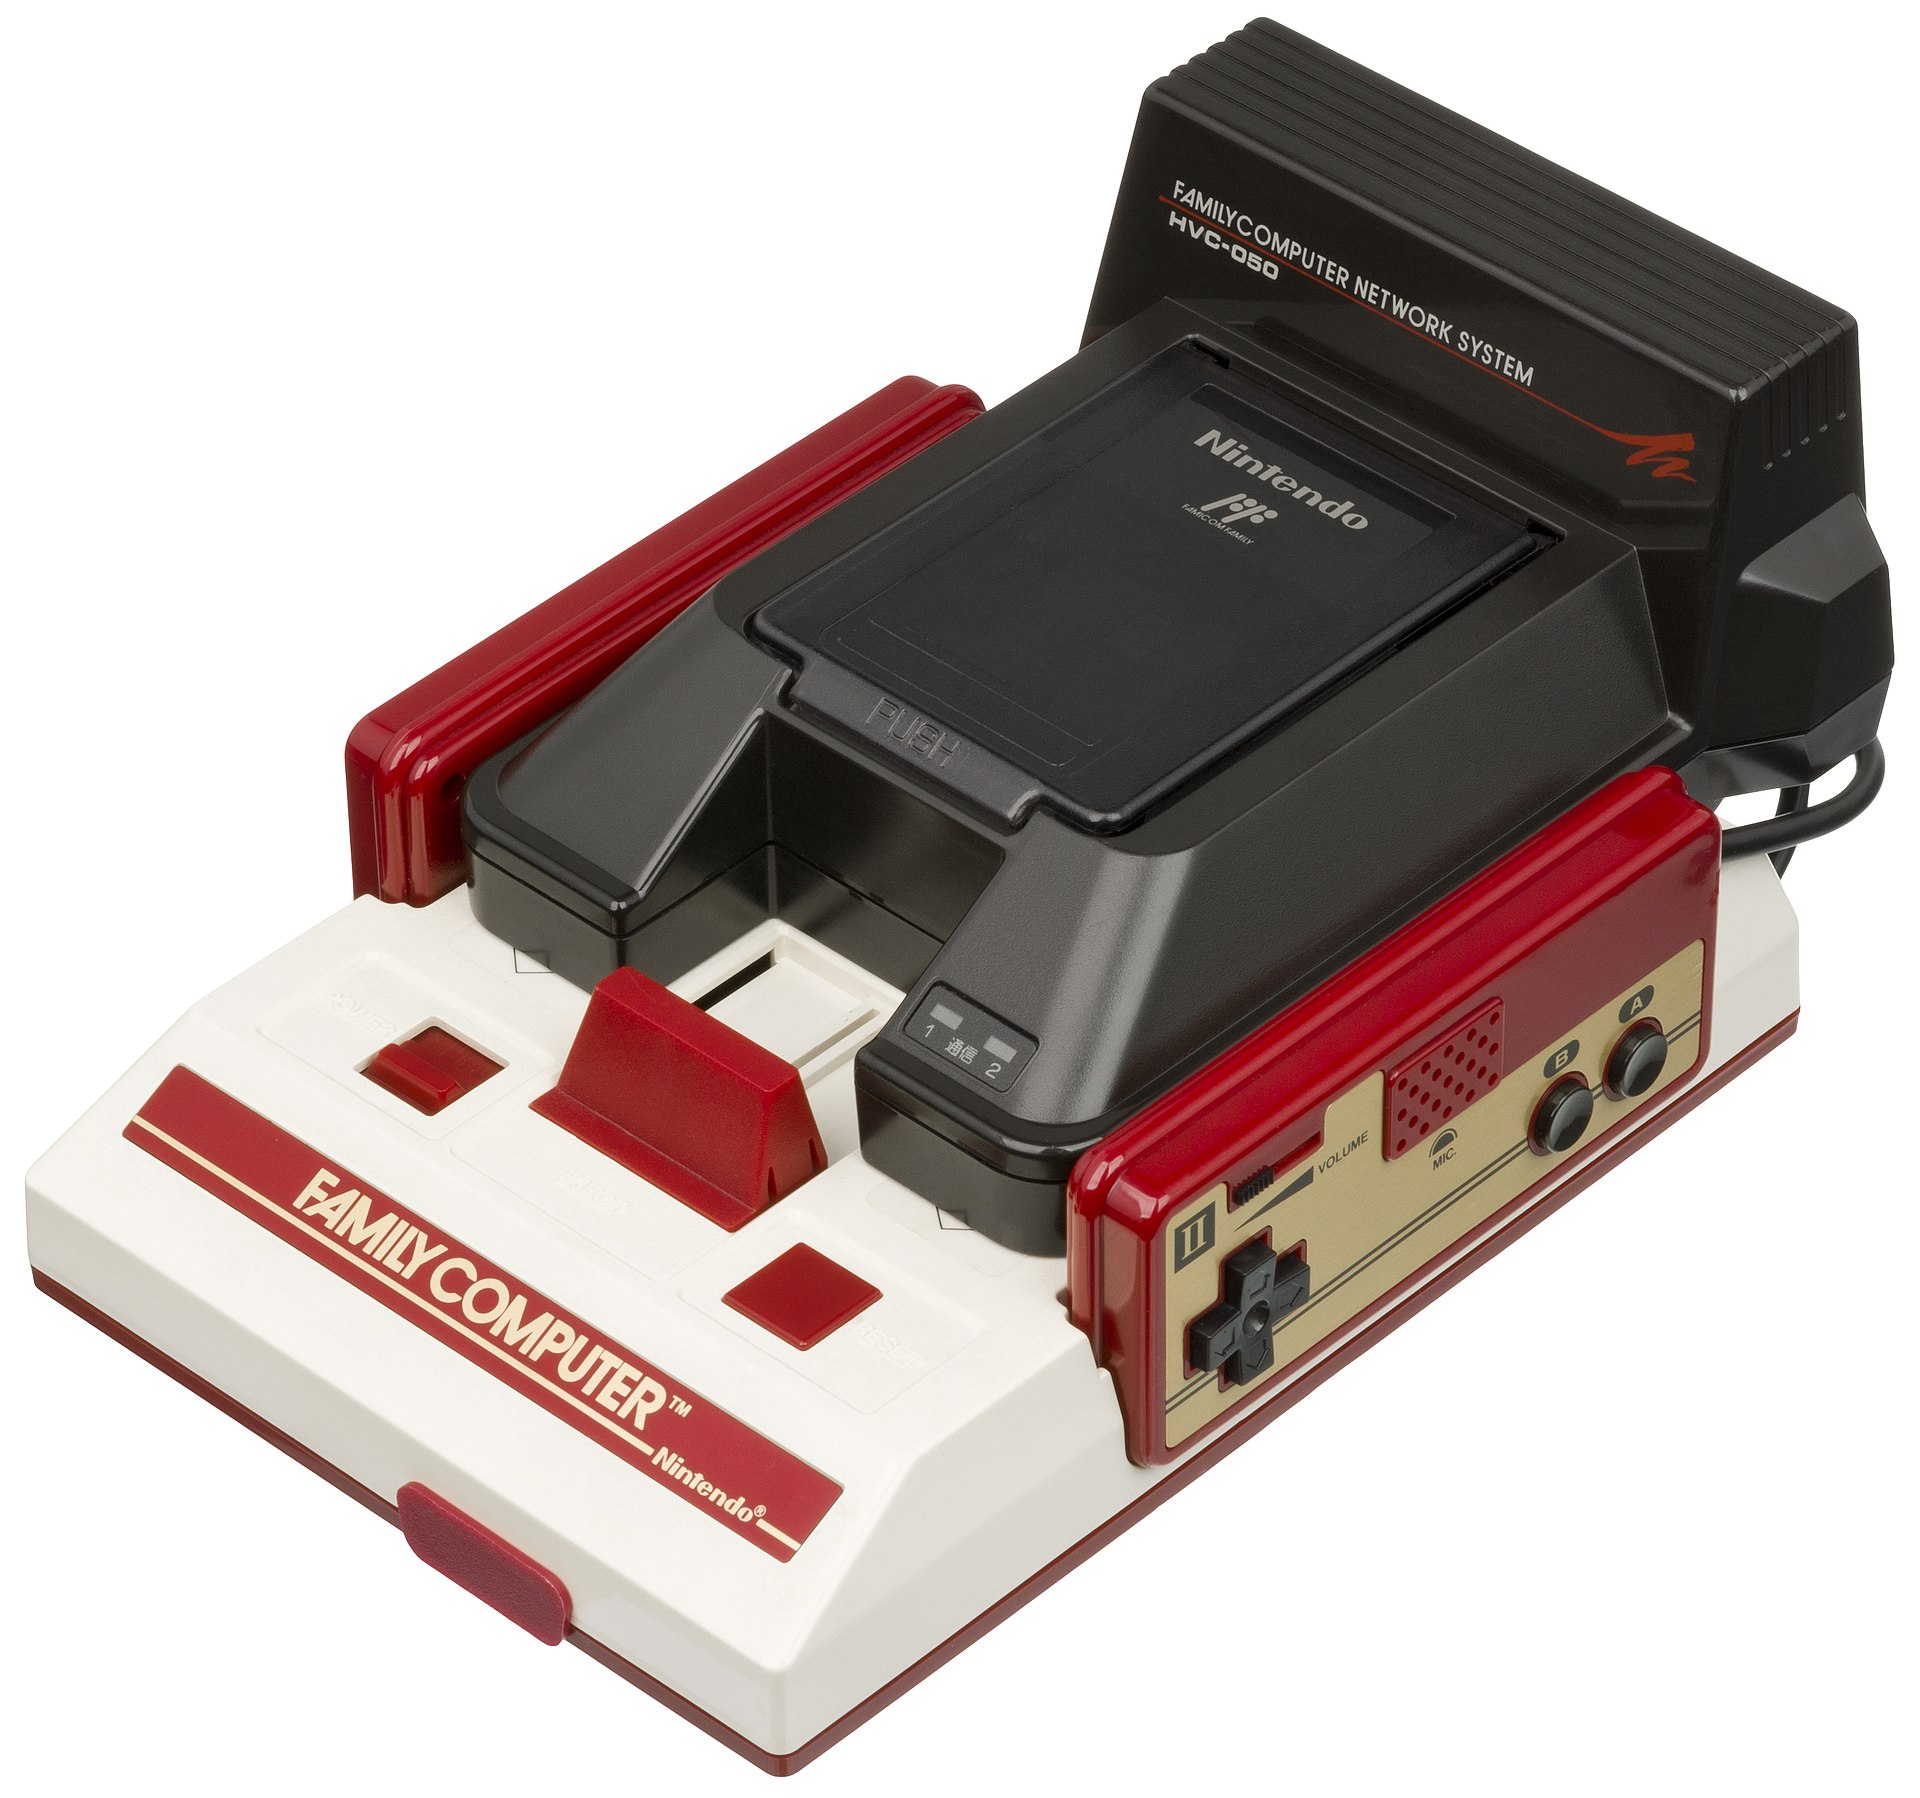 1920px-Nintendo-Famicom-Modem-Network-System-Attached.jpg